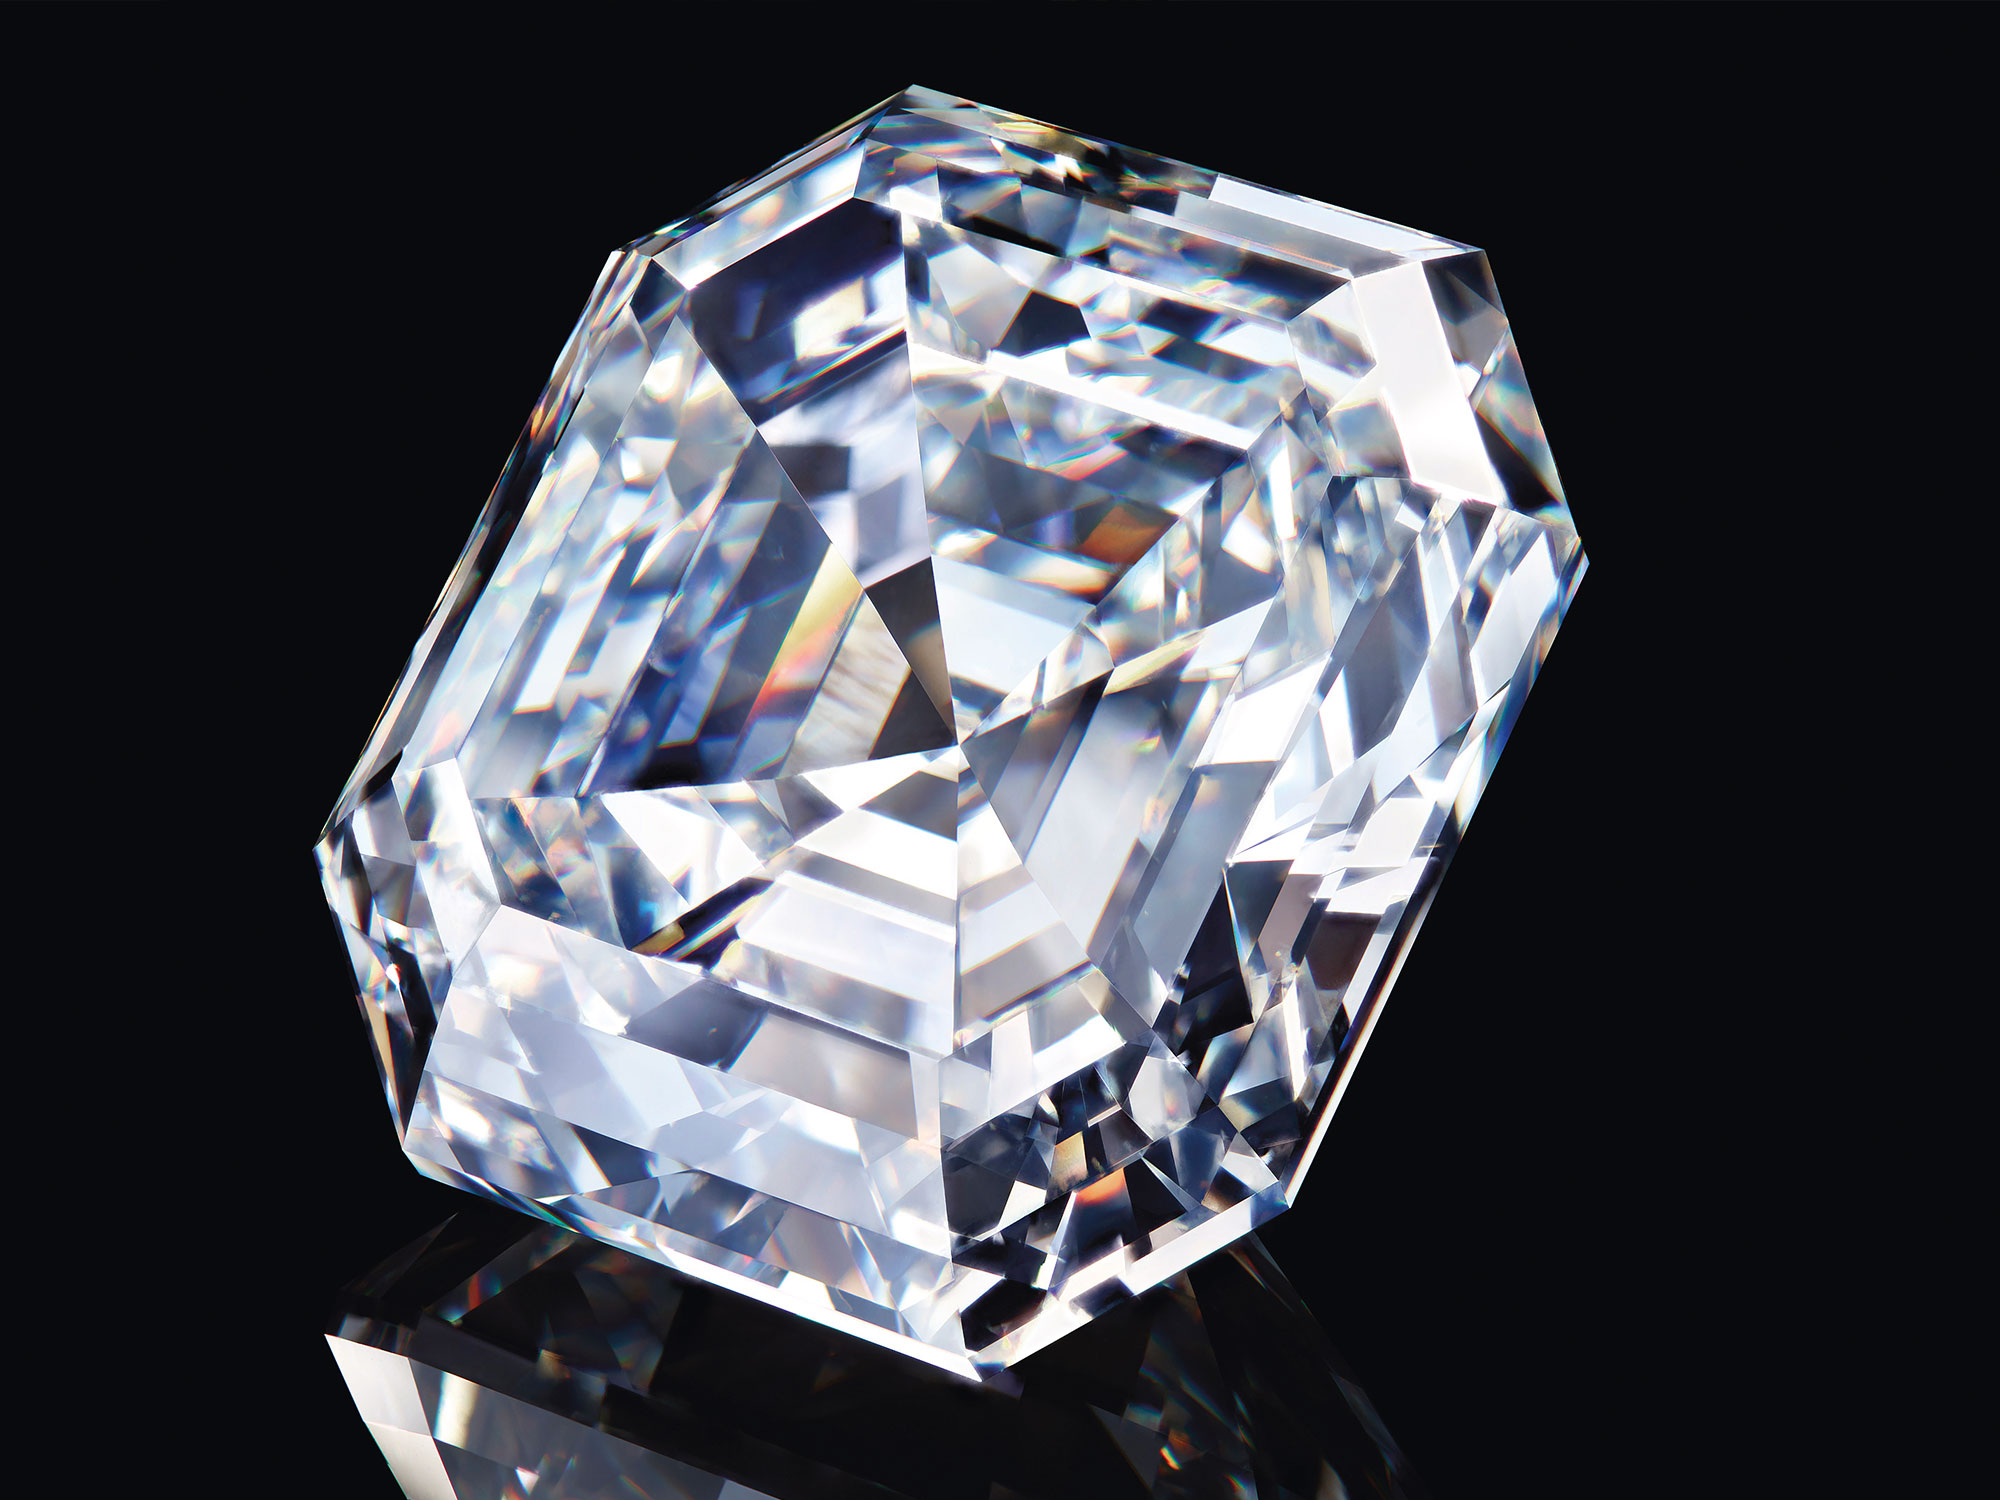 Close up of the 302.37 carat Graff Lesedi La Rona square emerald cut diamond